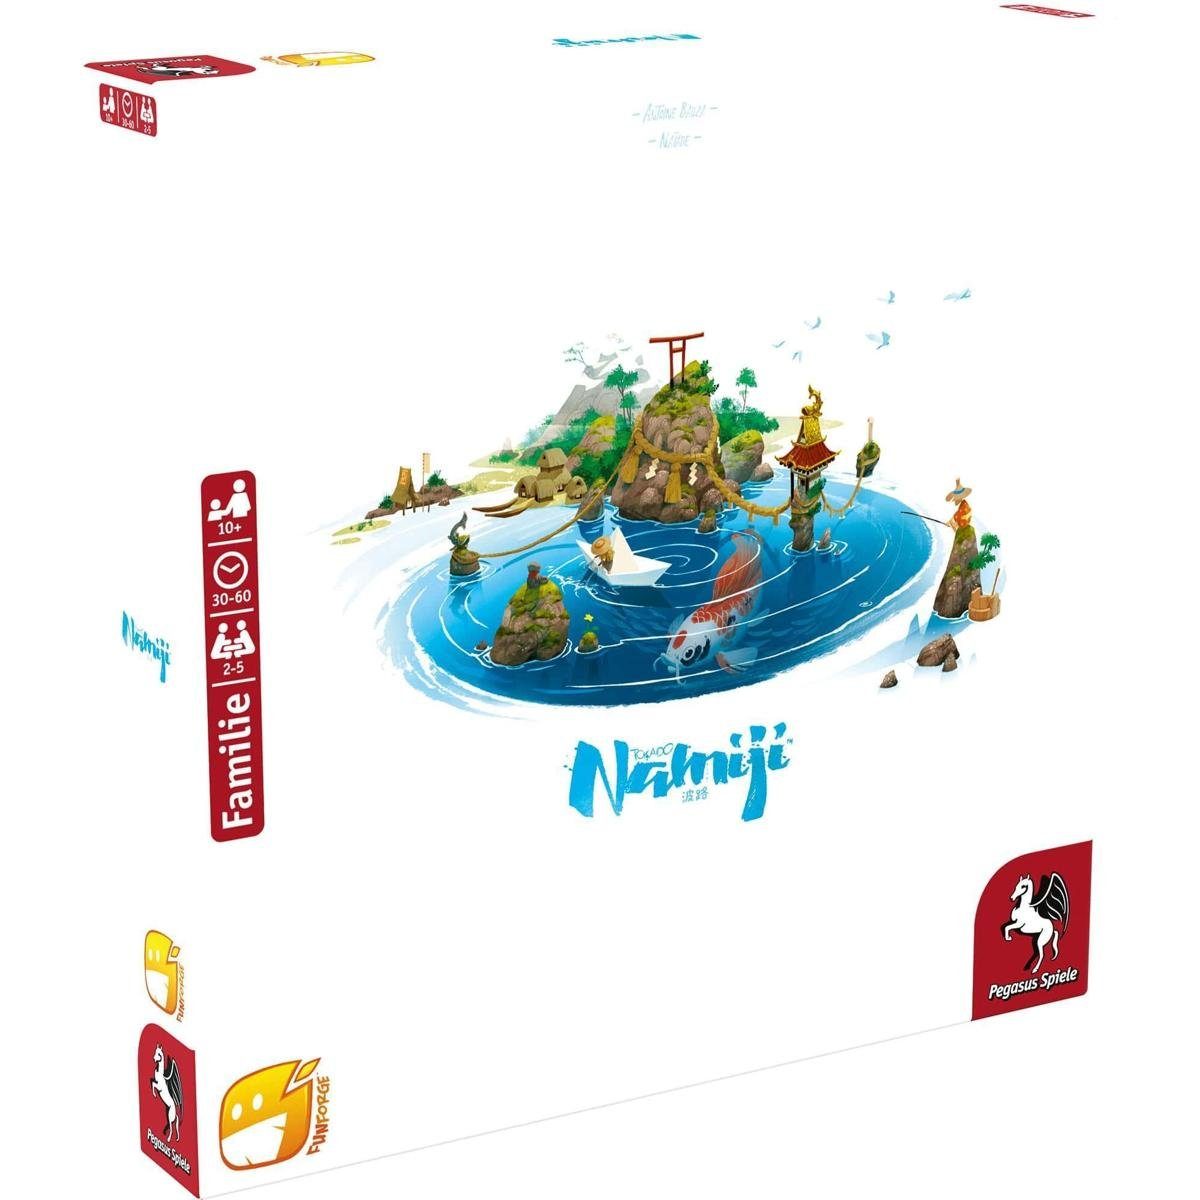 Pegasus Spiele Spiel, Familienspiel Namiji, Brettspiel, für 2-5 Spieler, ab 10 Jahren (DE-Ausgabe), Strategiespiel